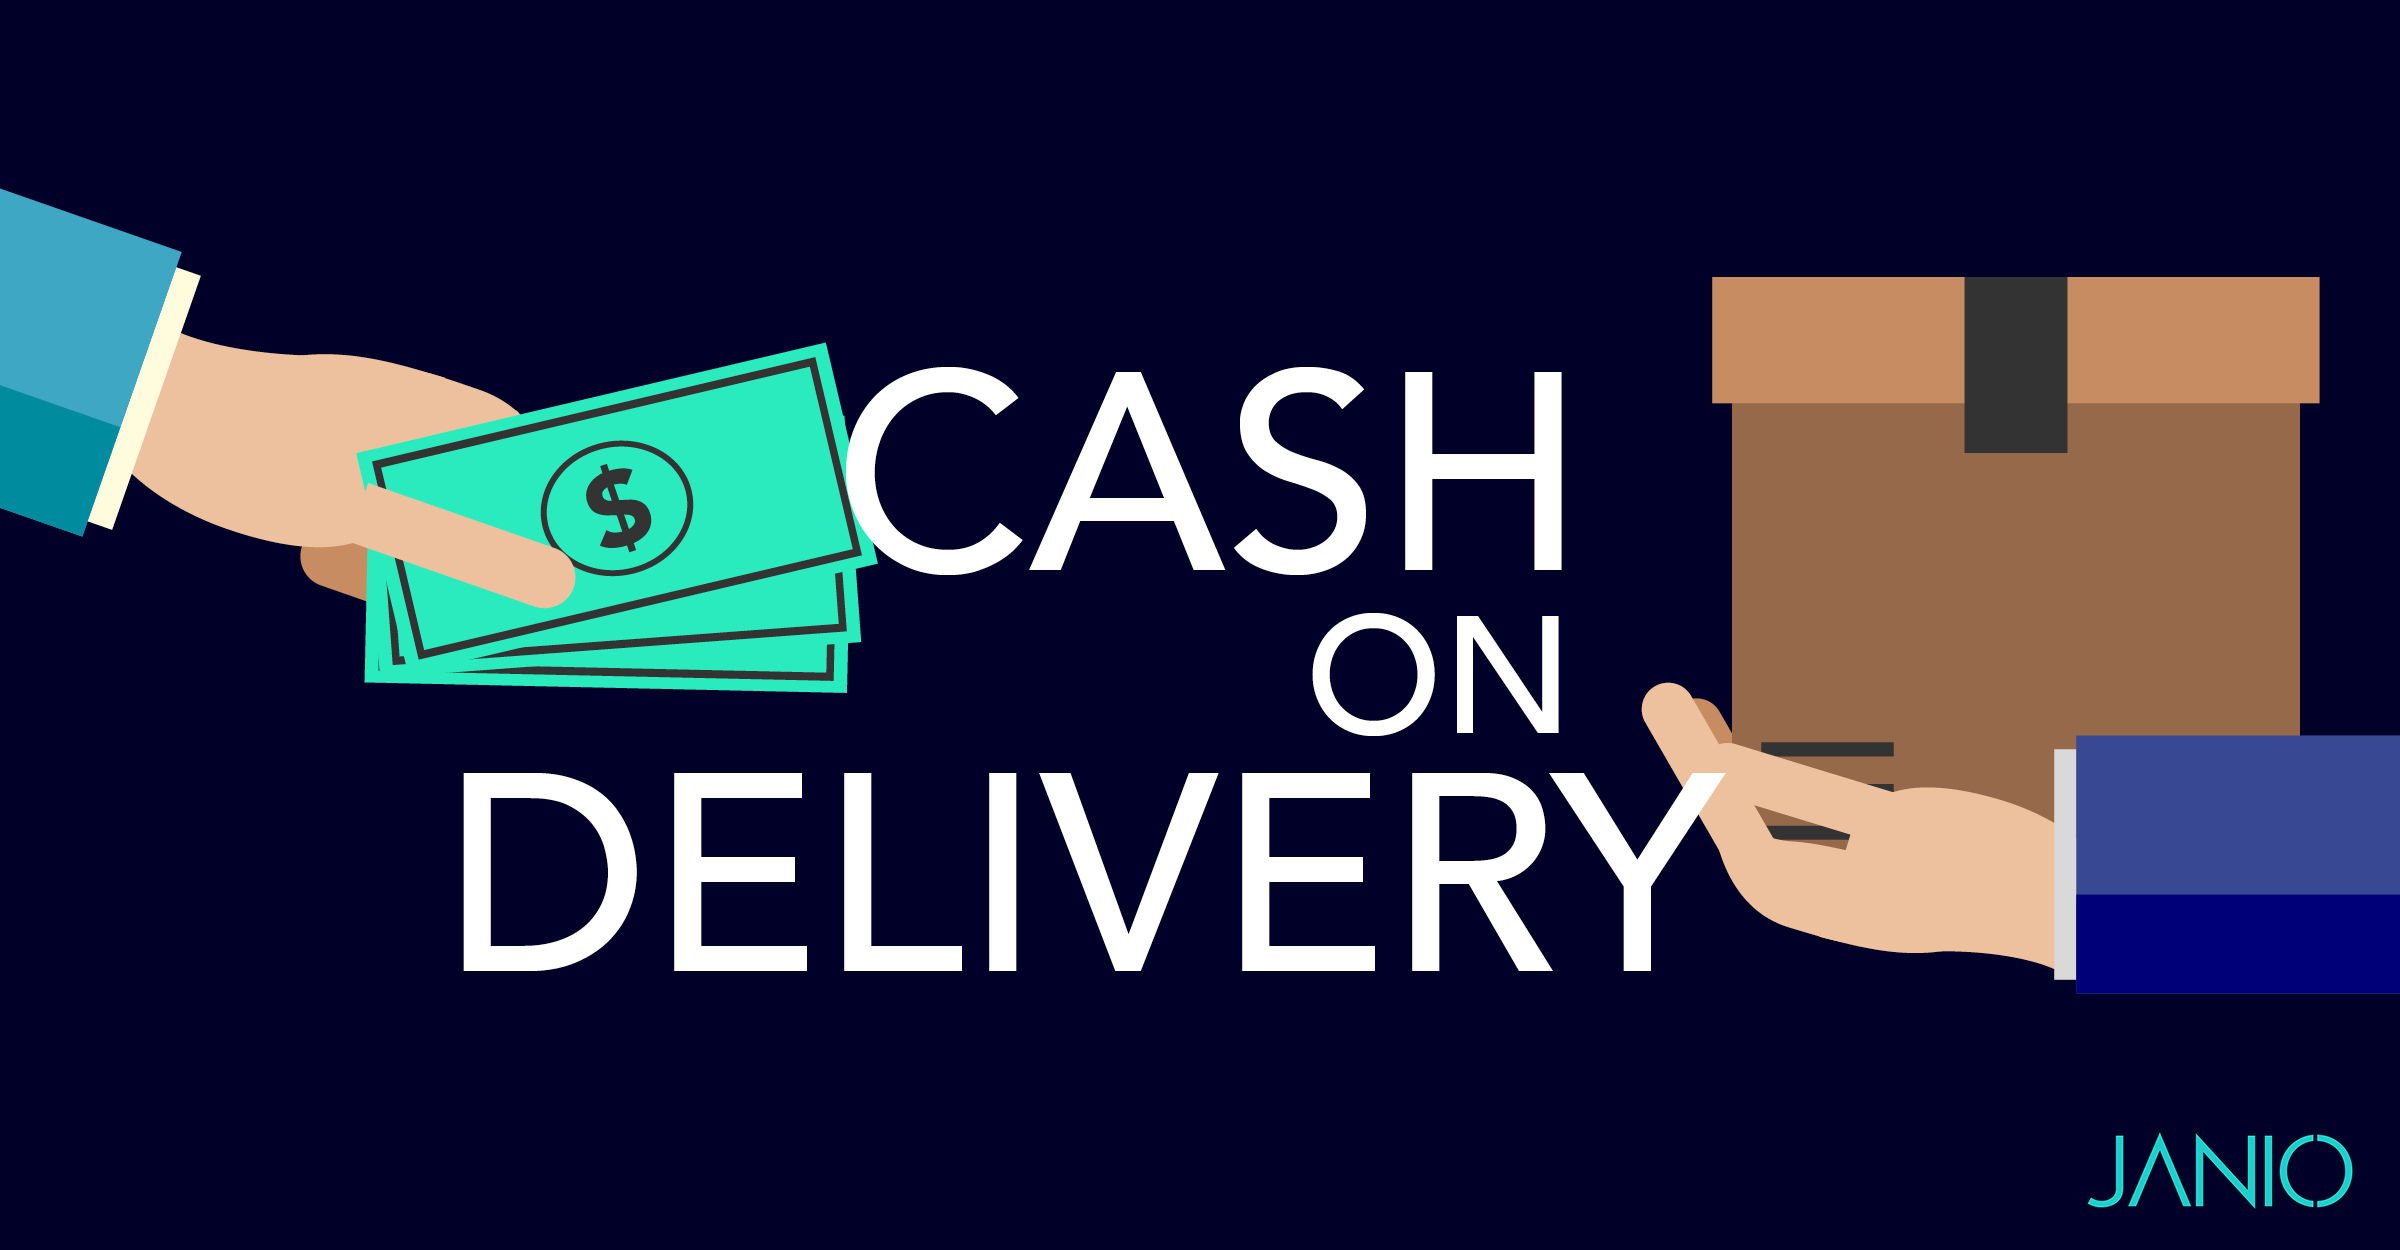 Cash on delivery & facebook ads